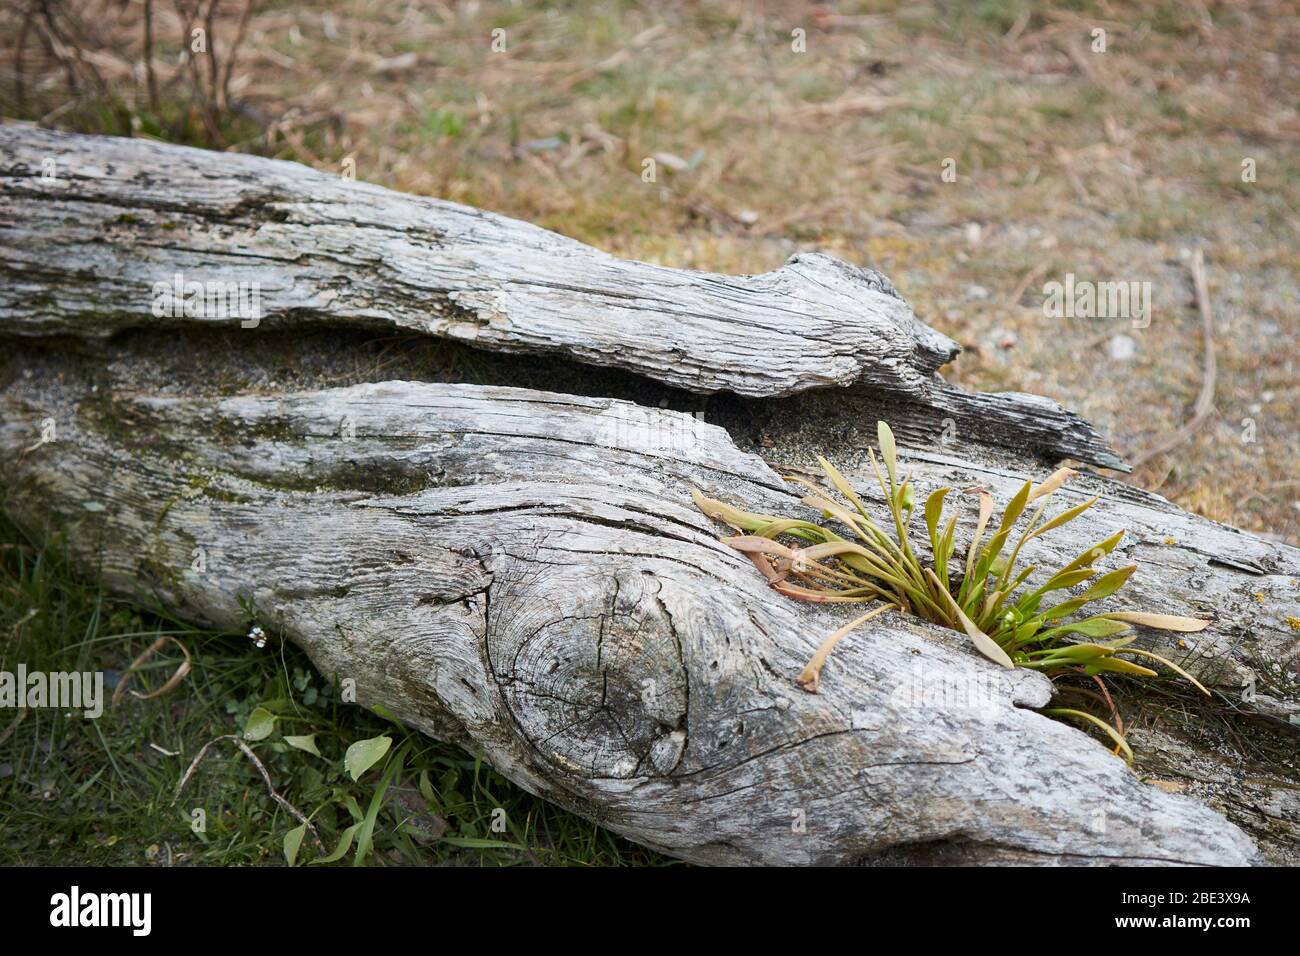 Jeunes mineurs de laitue (Claytonia perfoliata - également connu sous le nom de "laitue indienne", "beauté sauvage" et "ruelle d'hiver" ) qui poussent dans une fissure dans du bois de dérive o Banque D'Images